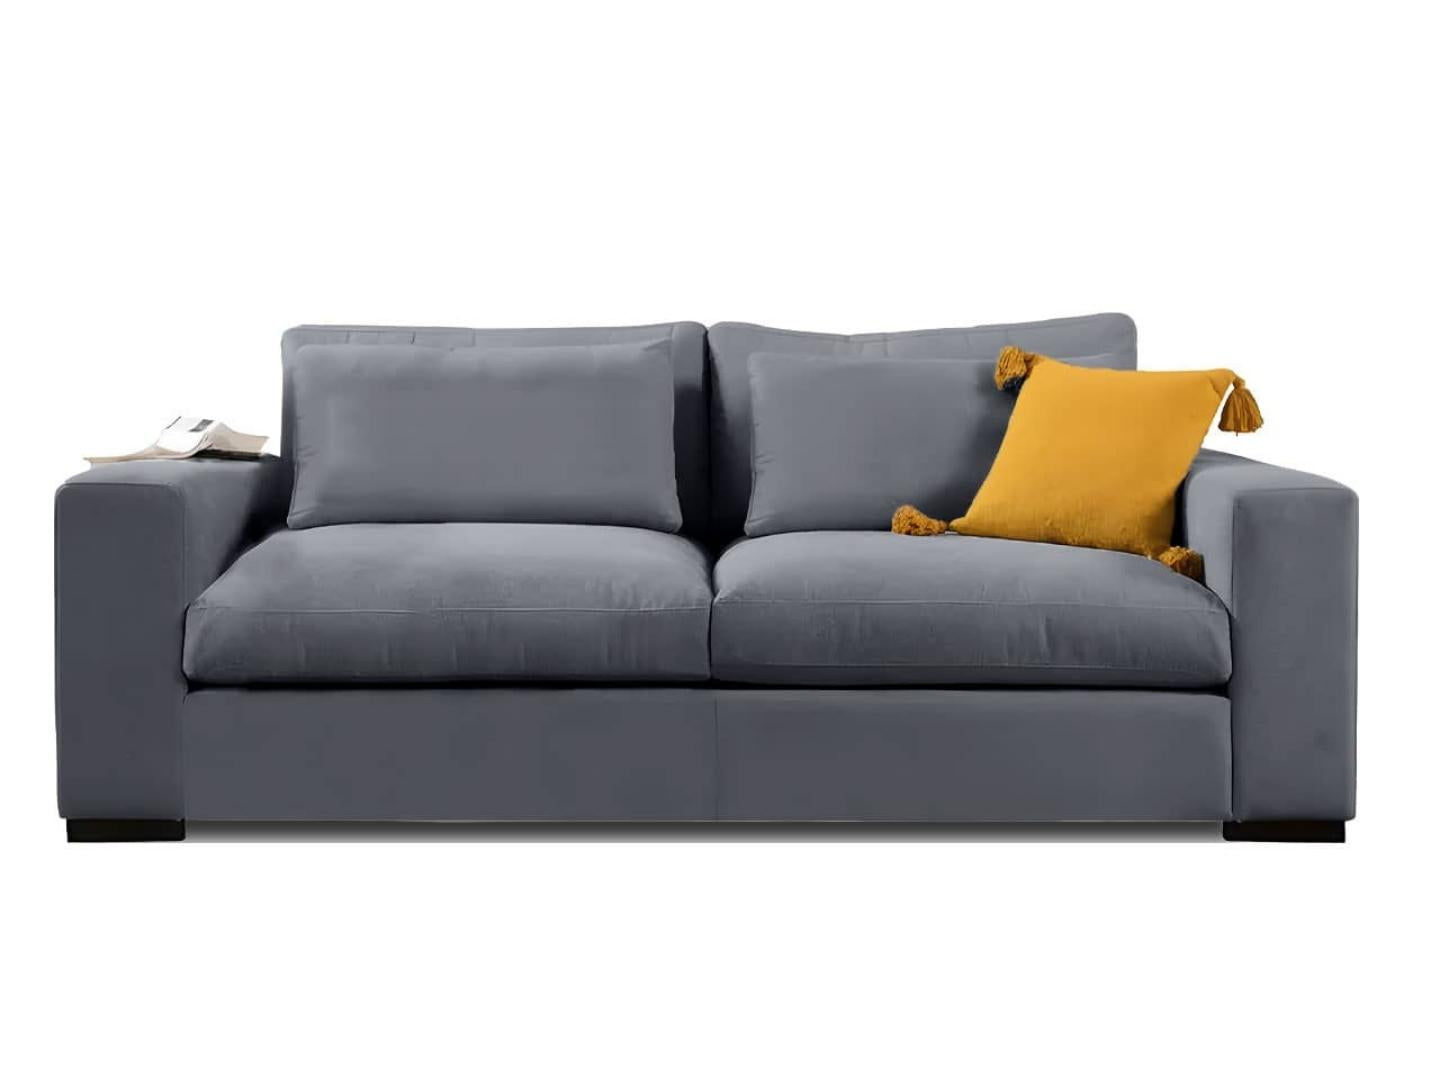 lagun sofa set 3 seater 2 seater blue grey - Lux Furniture